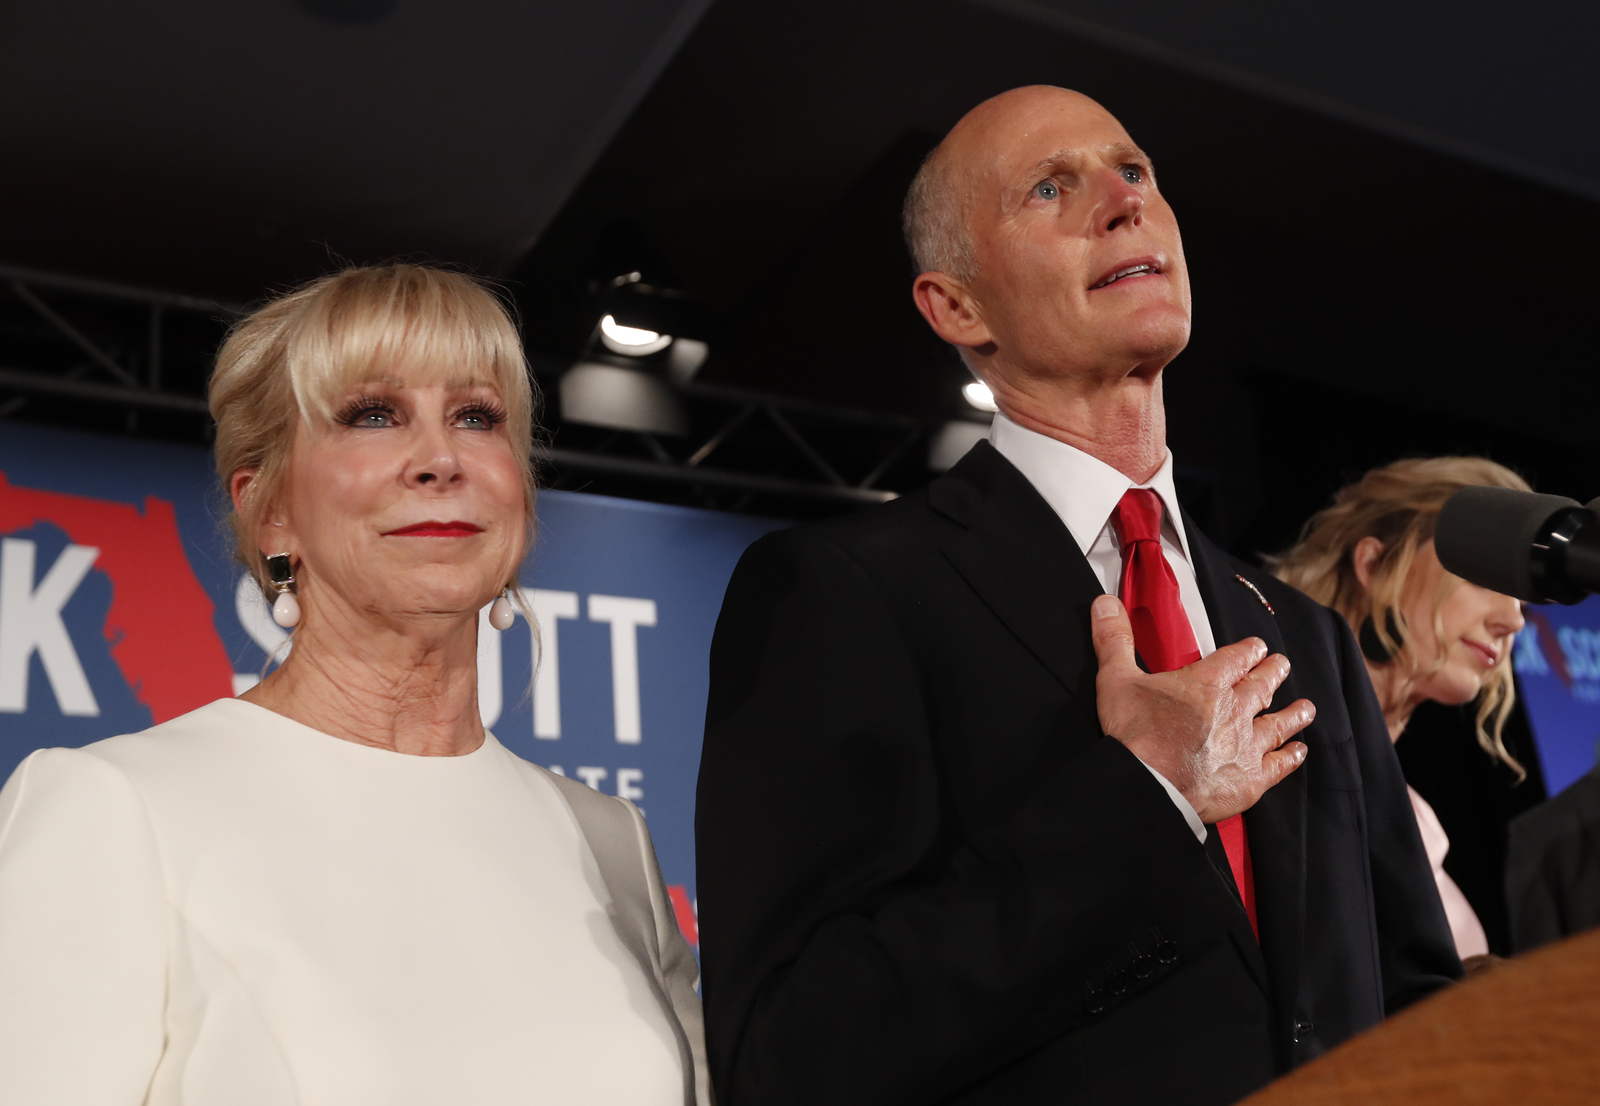 Recuento. El gobernador republicano Rick Scott ganó el Senado por Florida sobre el actual senador demócrata Bill Nelson.